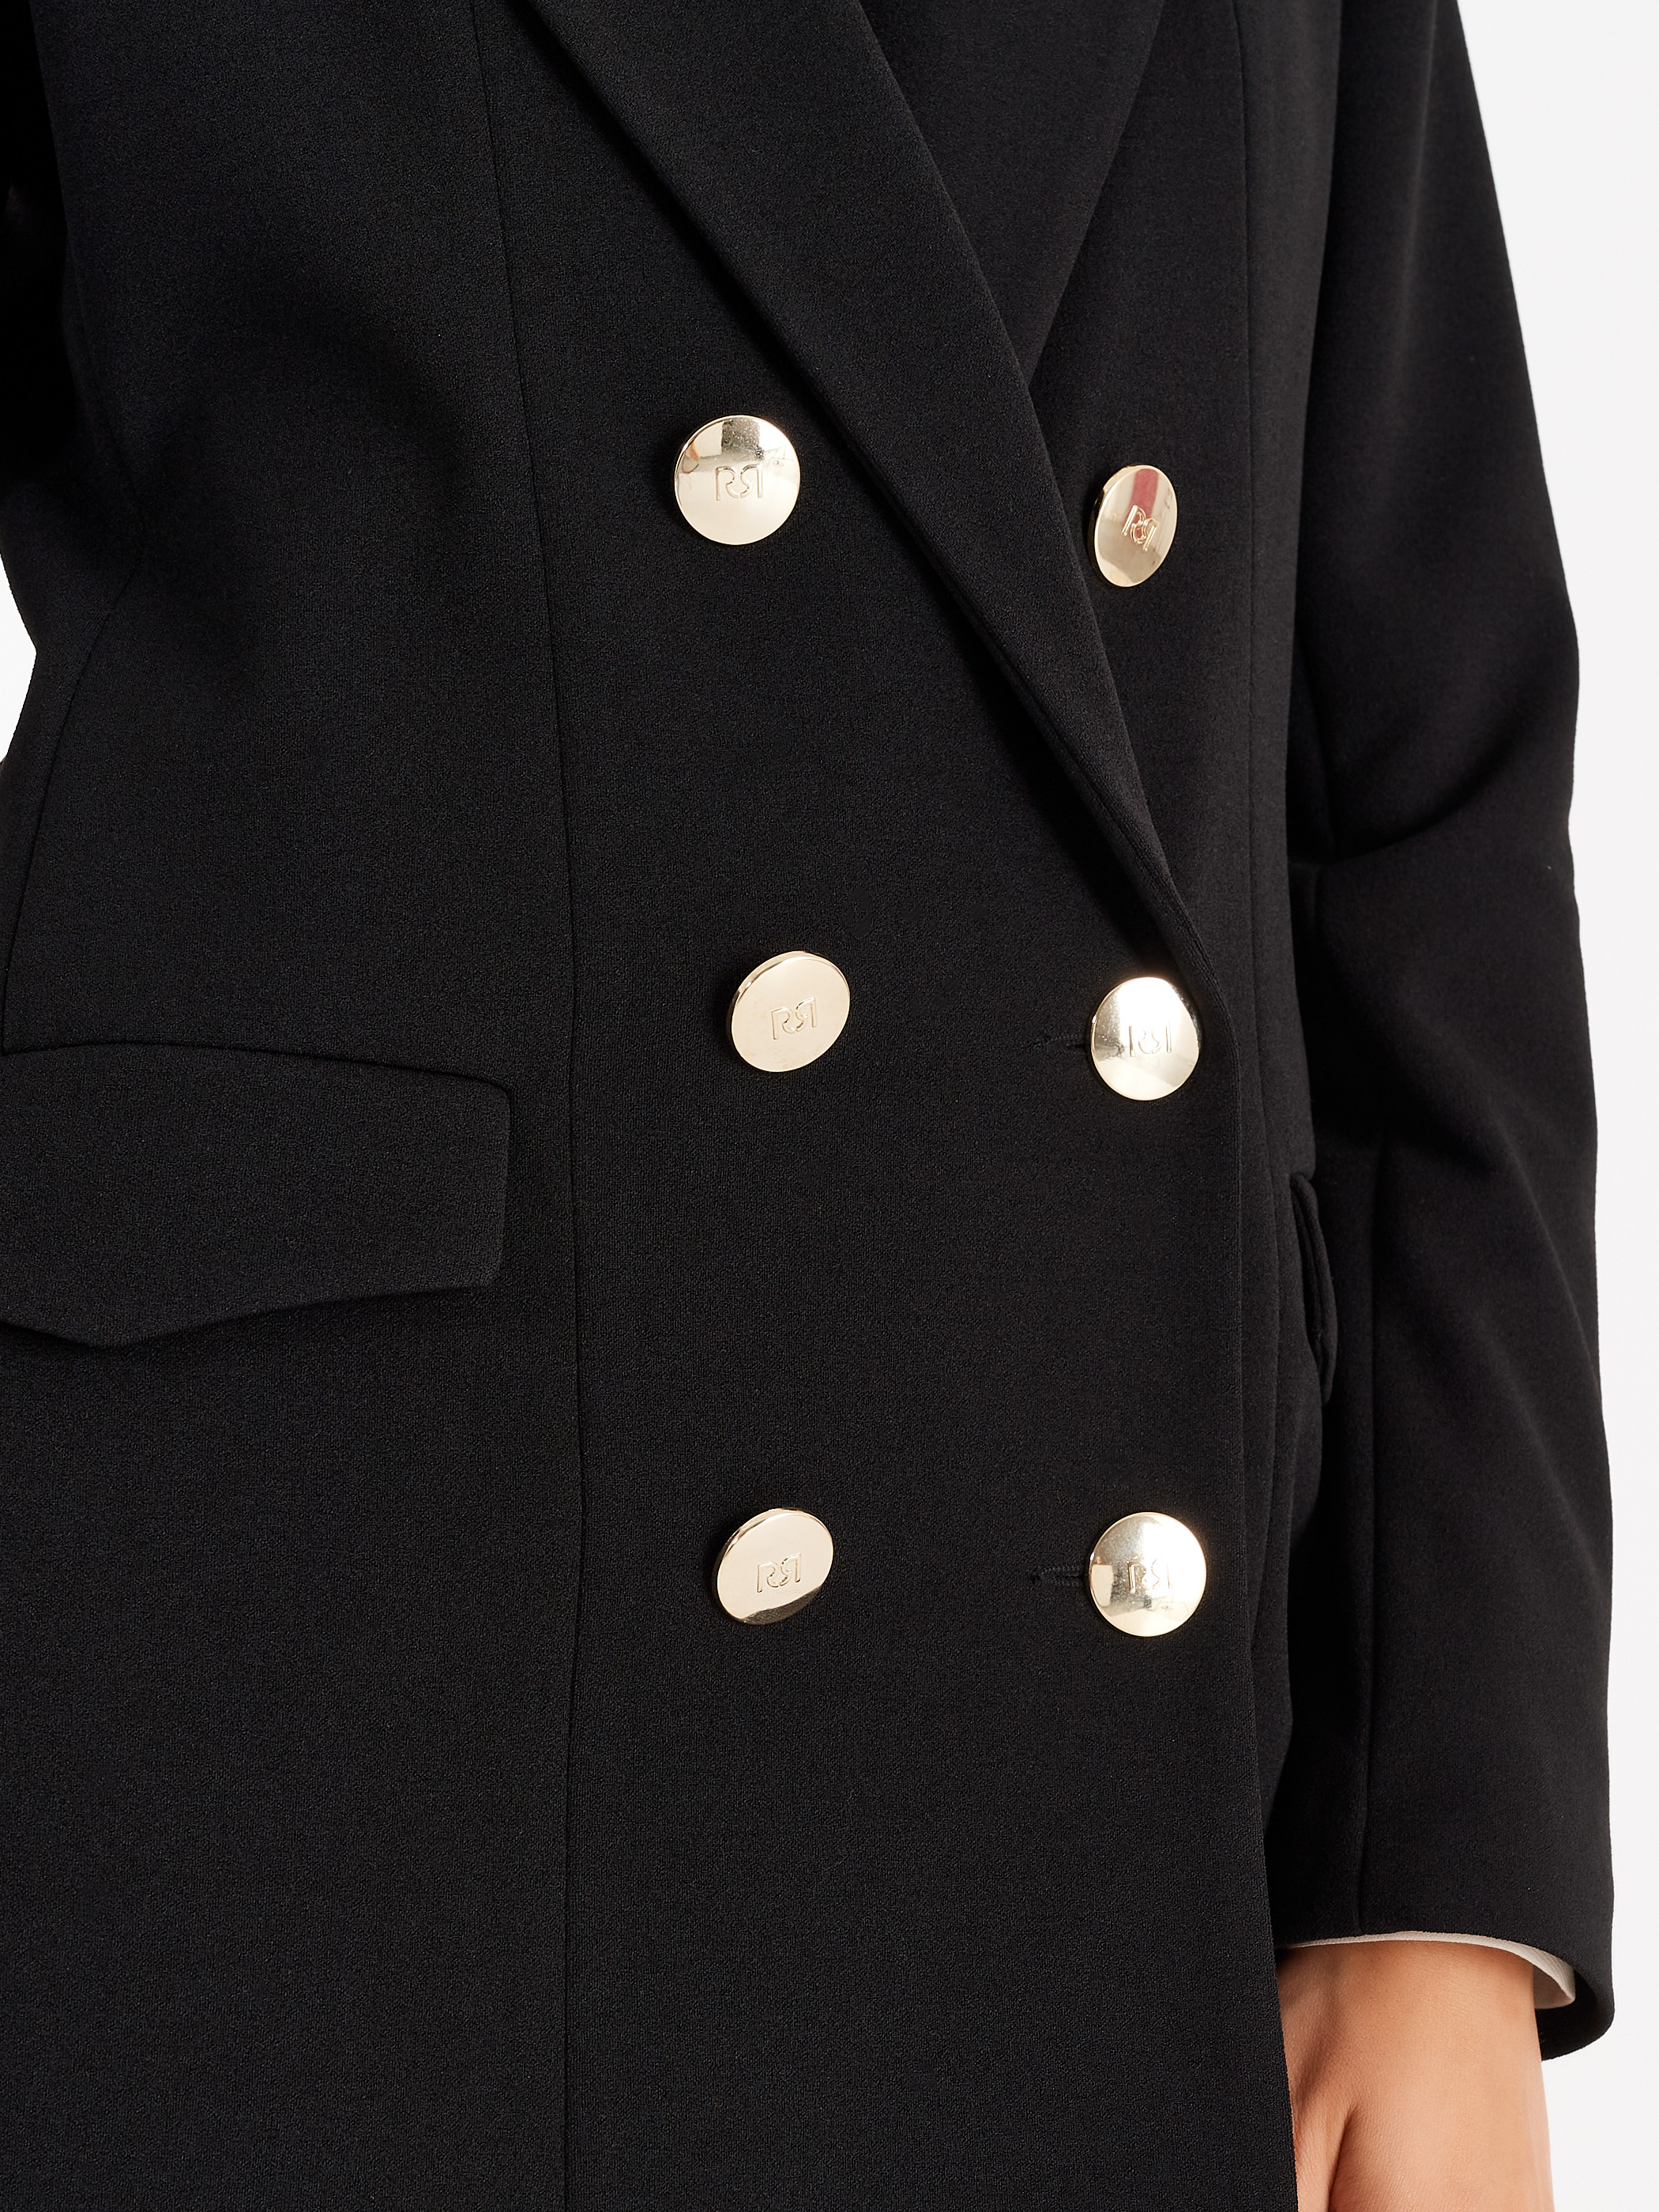 Giacca da donna doppiopetto con bottoni a quadri giacca da ufficio abbigliamento da lavoro giacca slim fit giacca giacca donna giacca da donna giacca con risvolto stampa bianco nero 